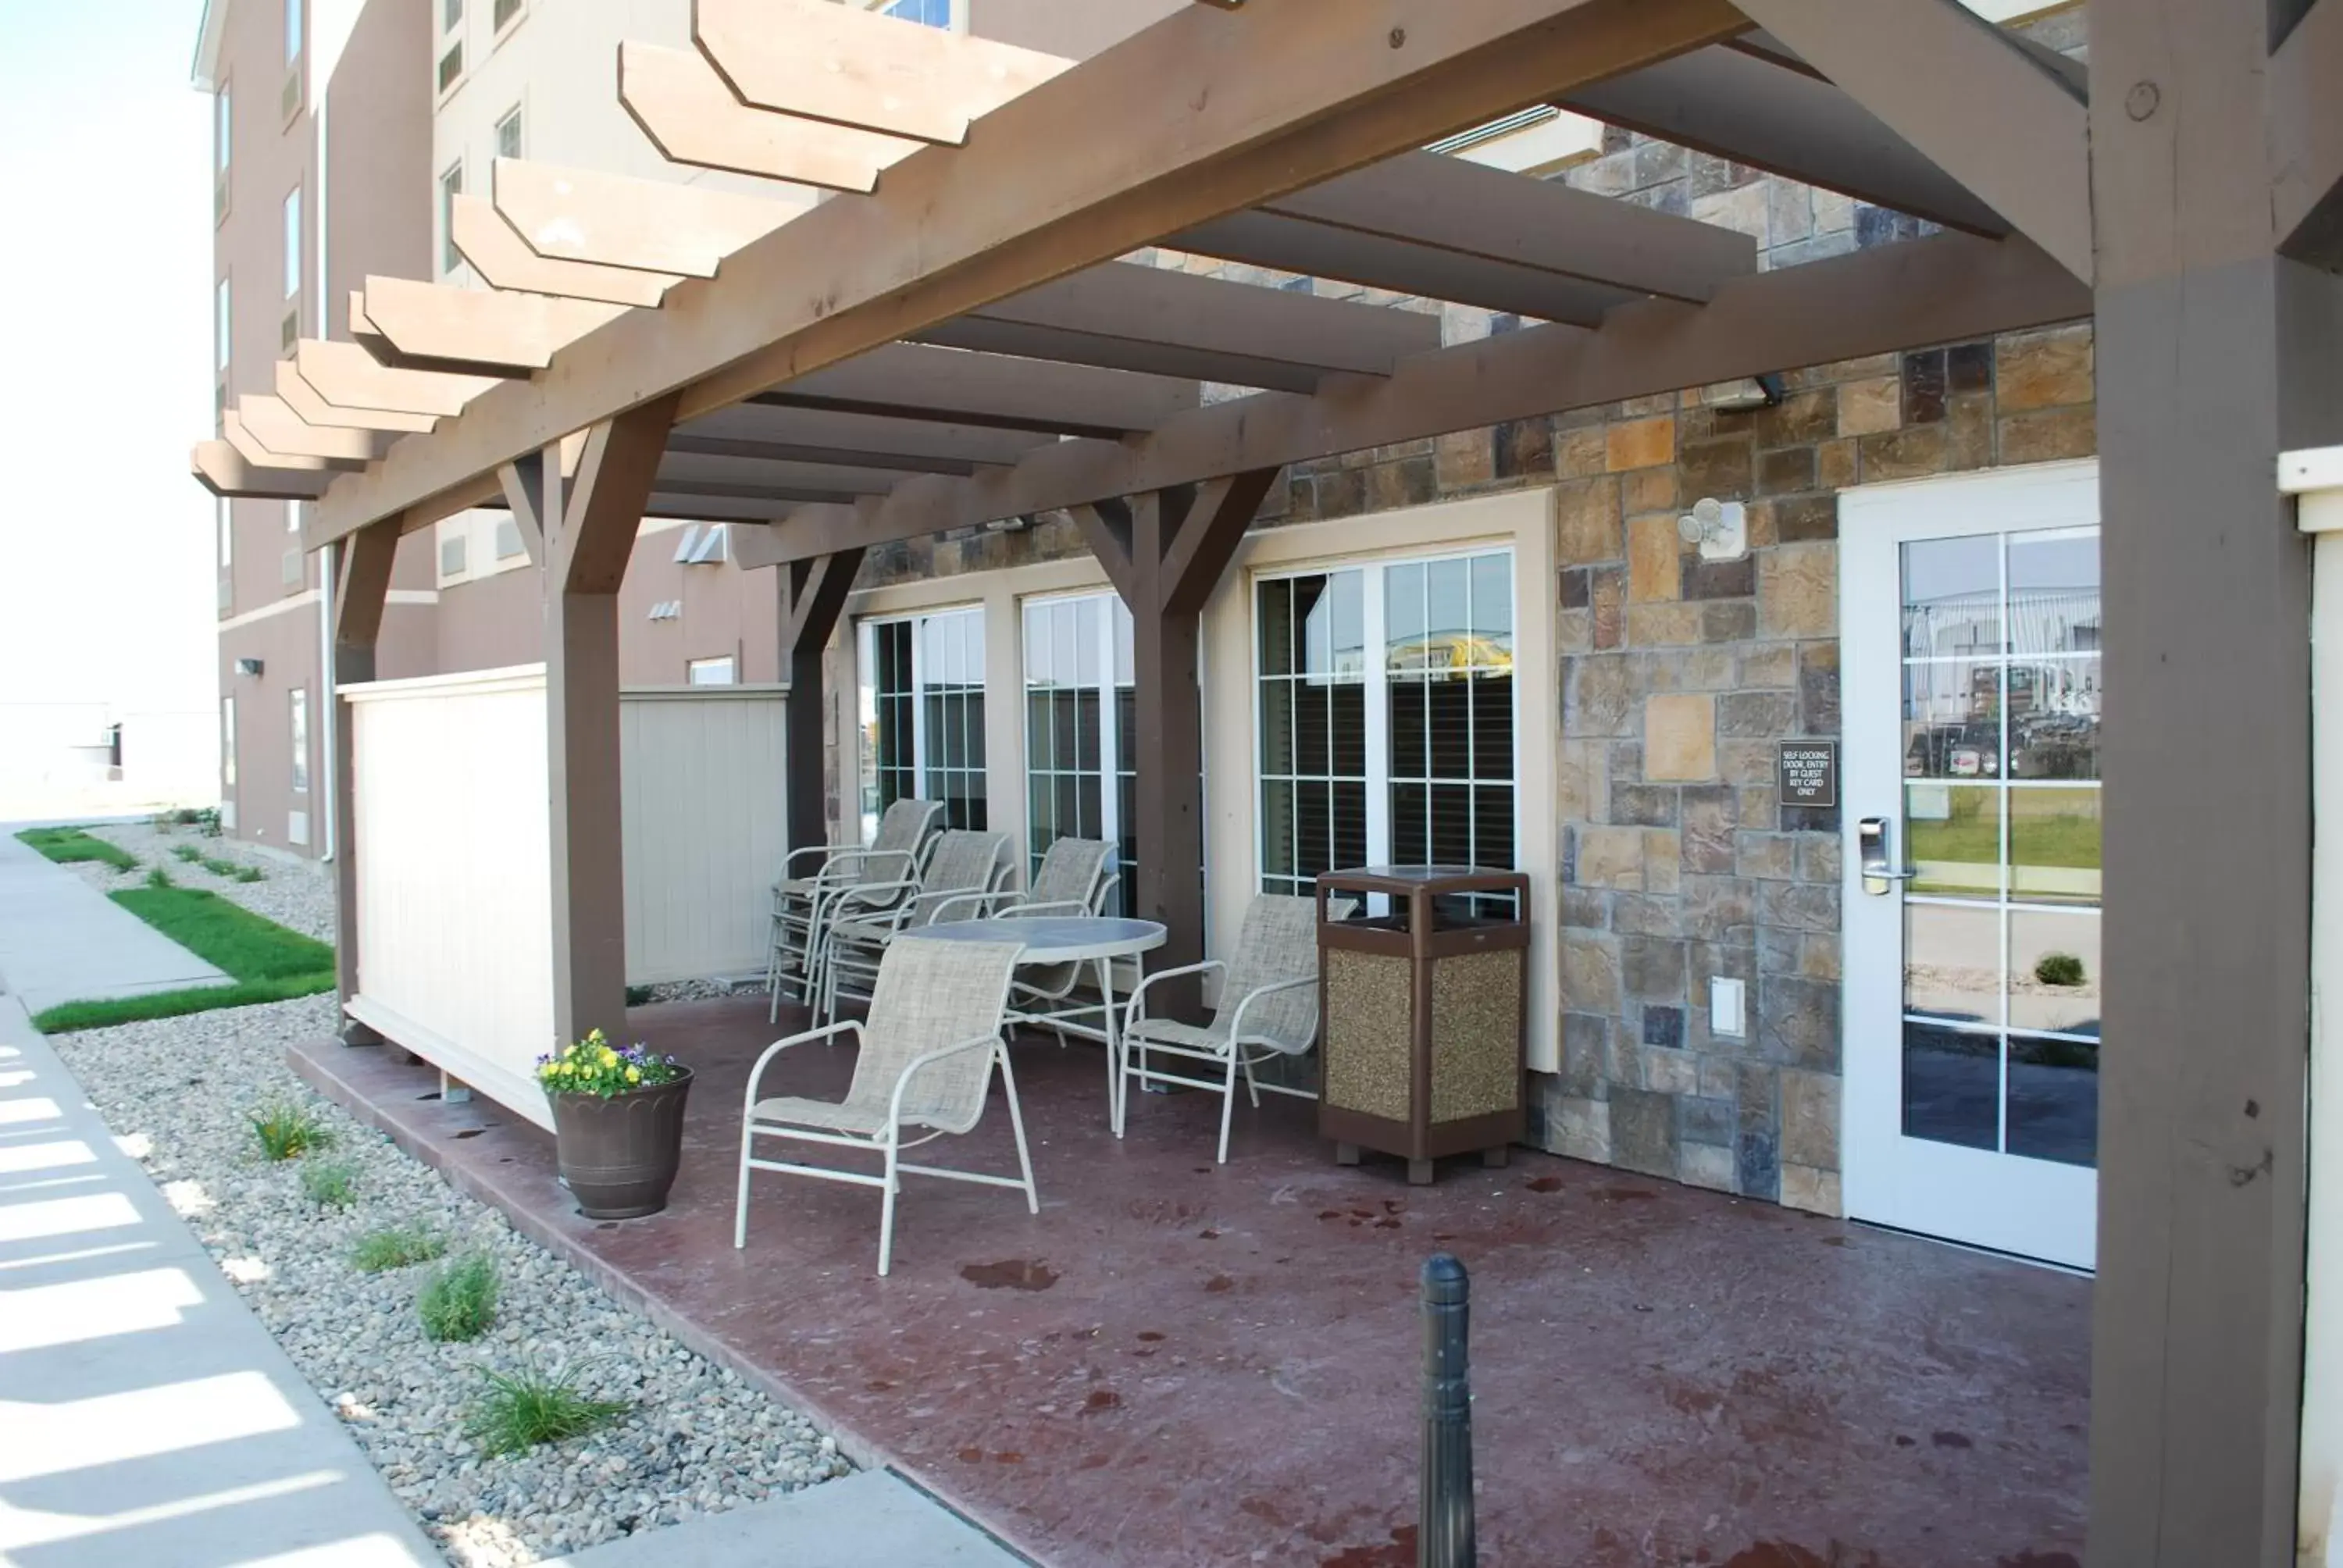 Property building, Patio/Outdoor Area in Landmark Suites - Williston